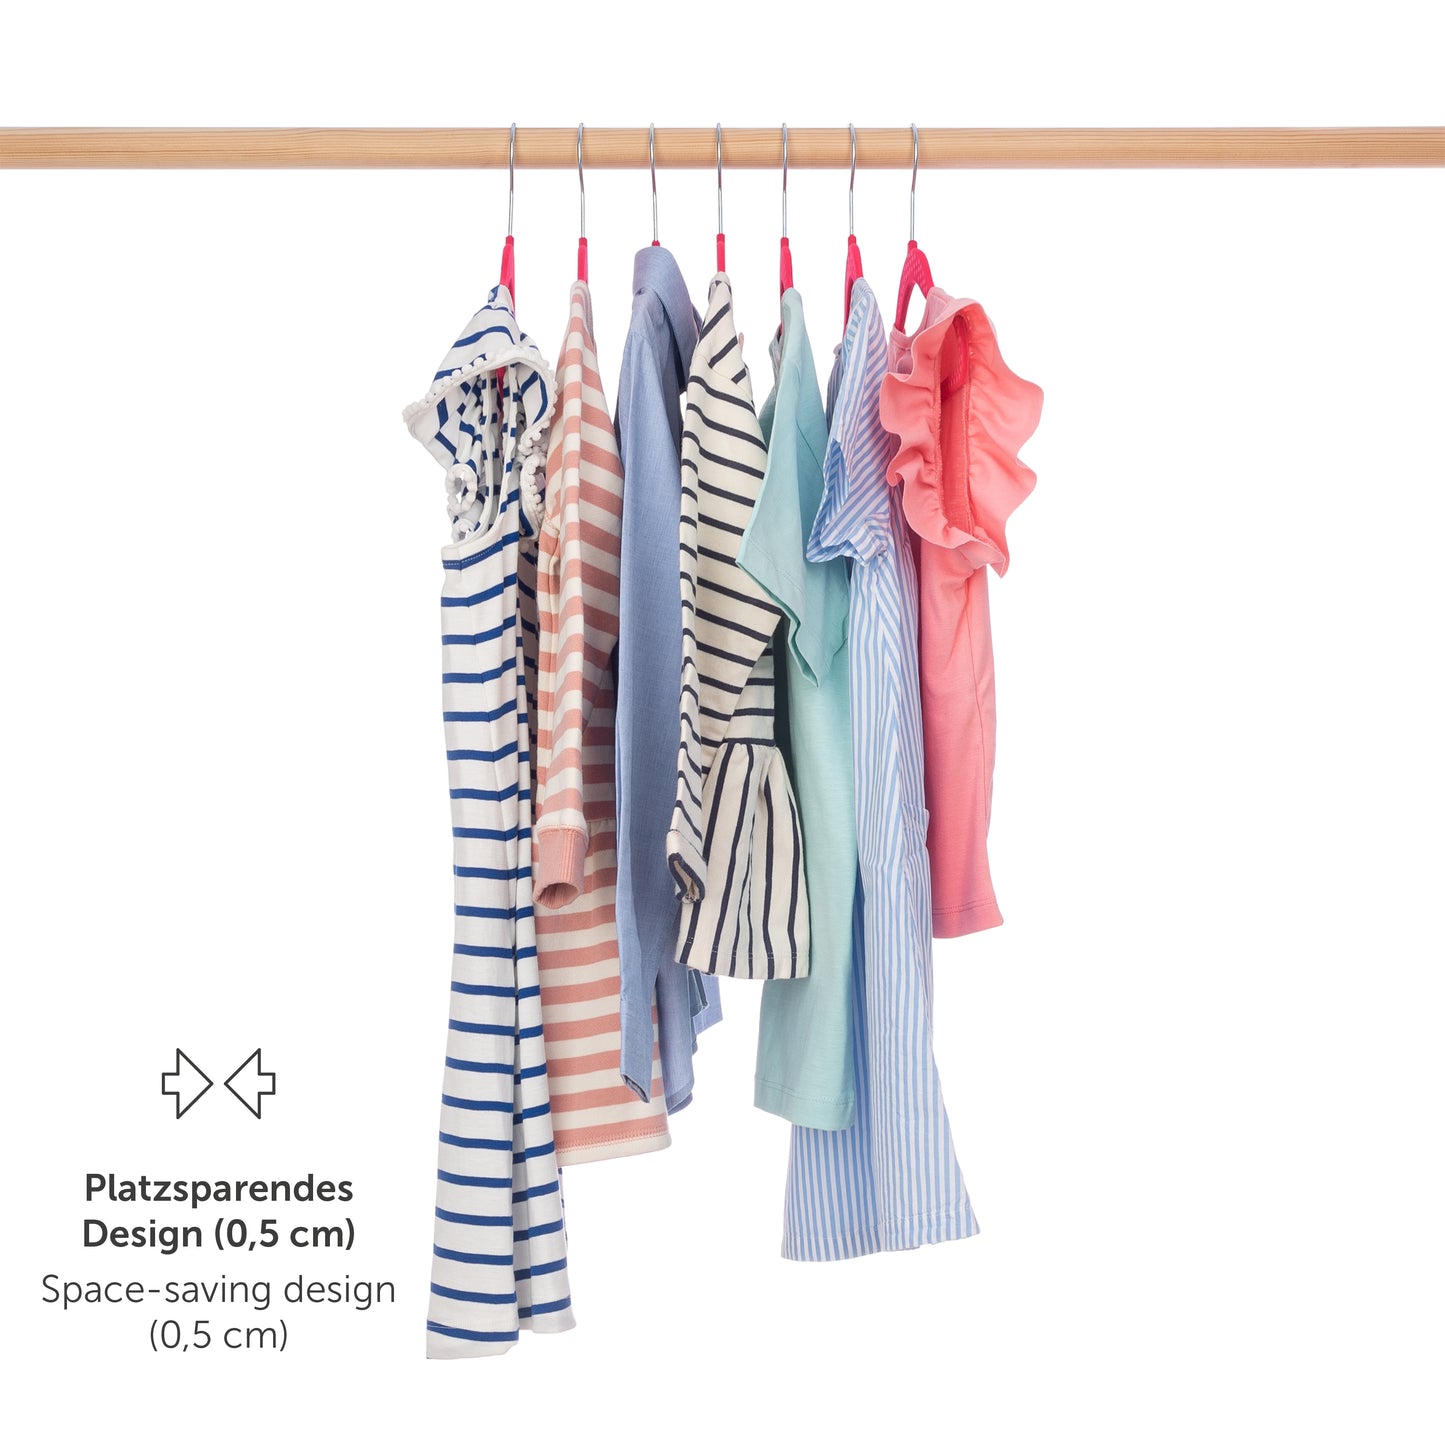 Verschieden gemusterte Kinderkleider auf pinken Kleiderbügeln an einer Stange hängend mit Hinweis auf platzsparendes Design